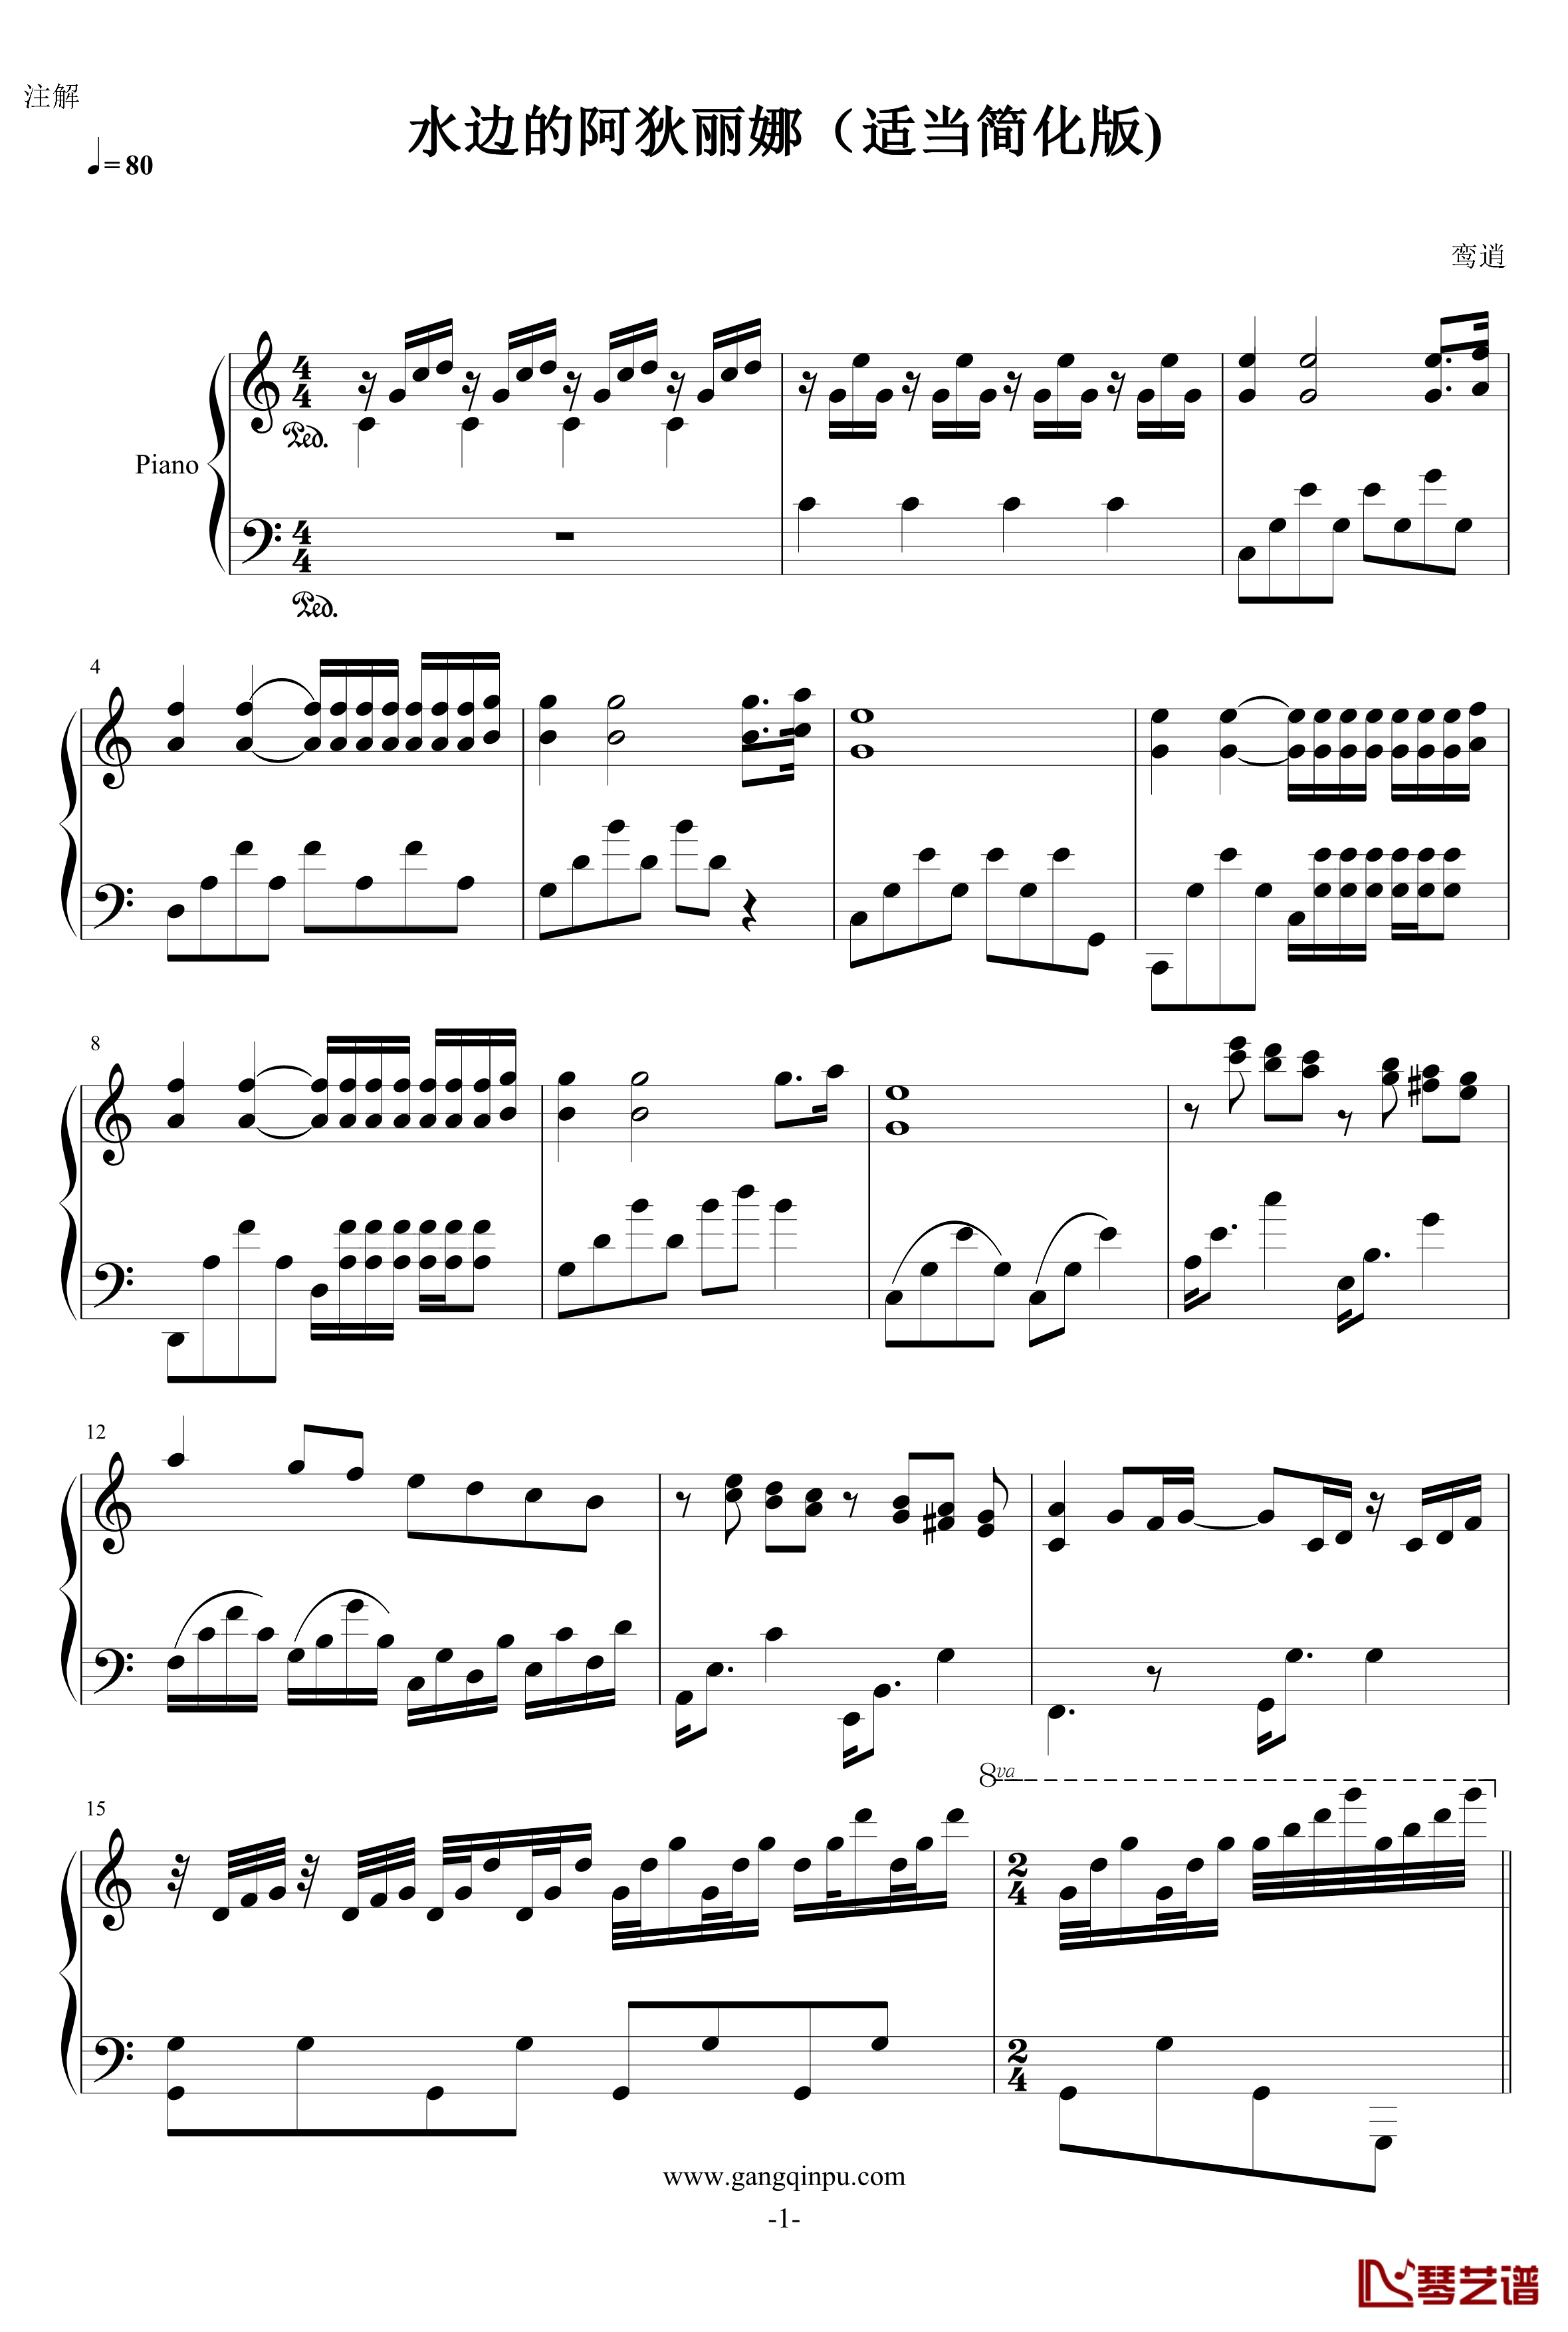 水边的阿狄丽娜钢琴谱-适当简化版-克莱德曼1